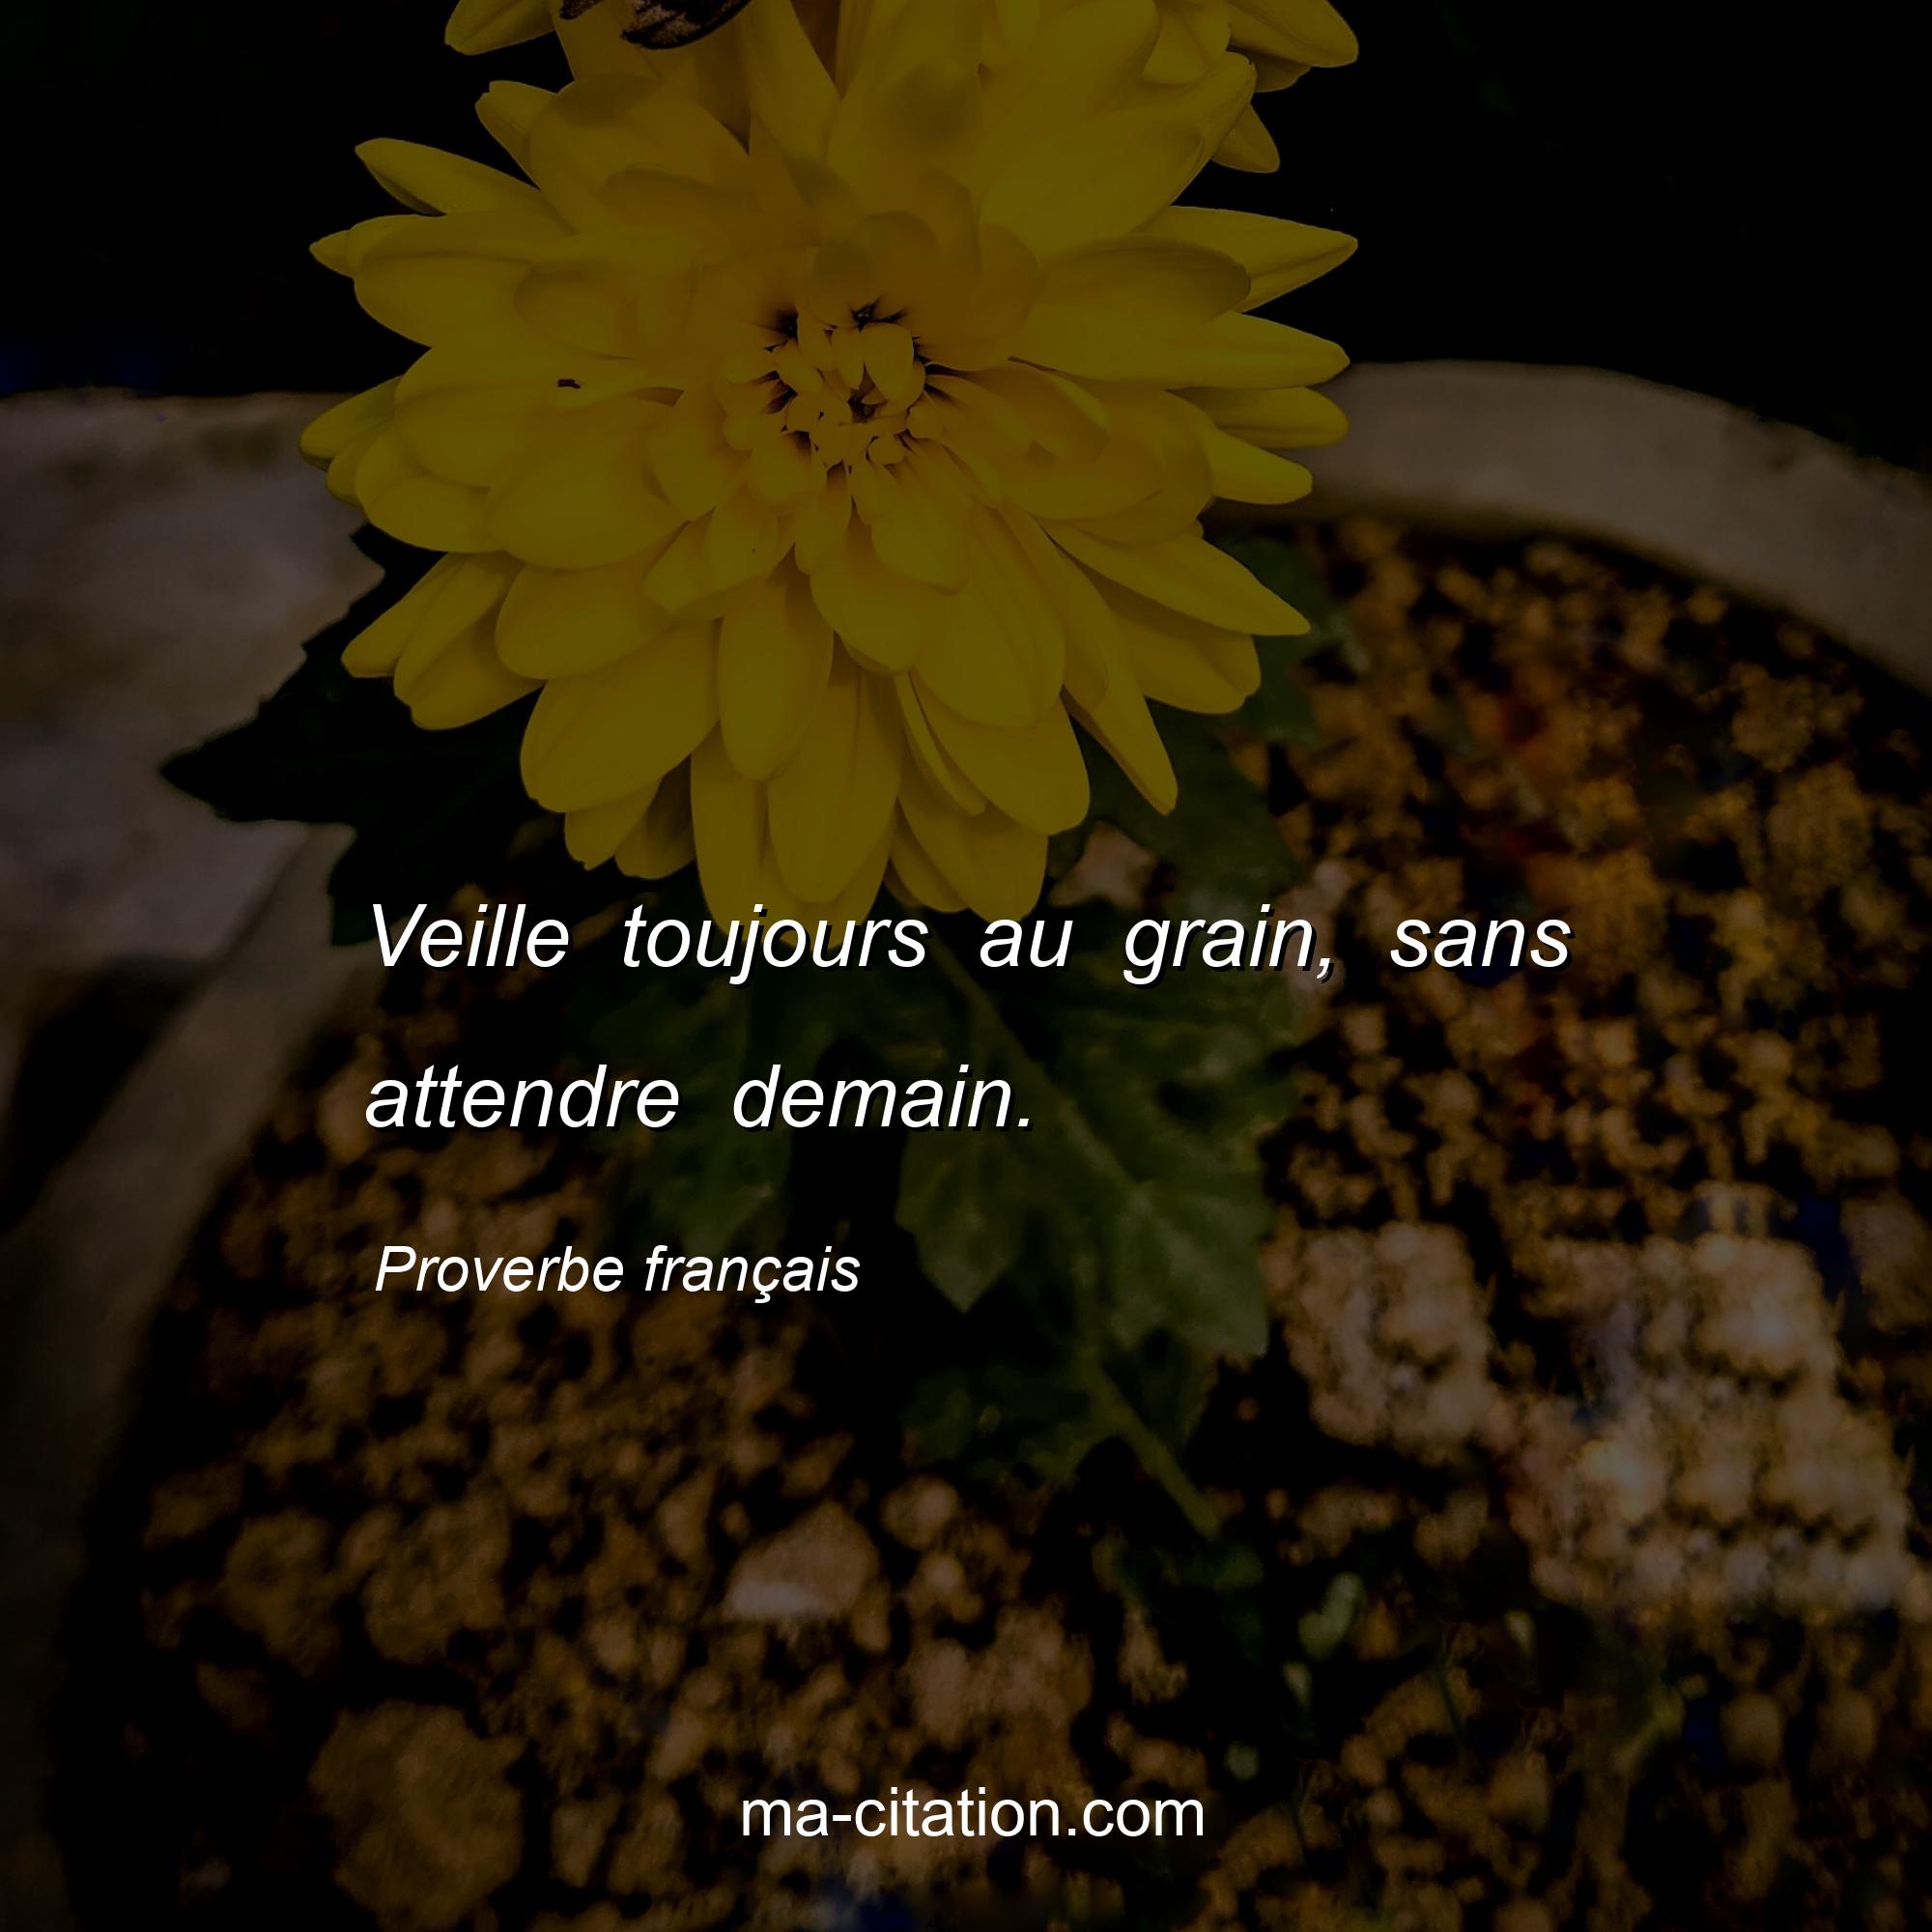 Proverbe français : Veille toujours au grain, sans attendre demain.